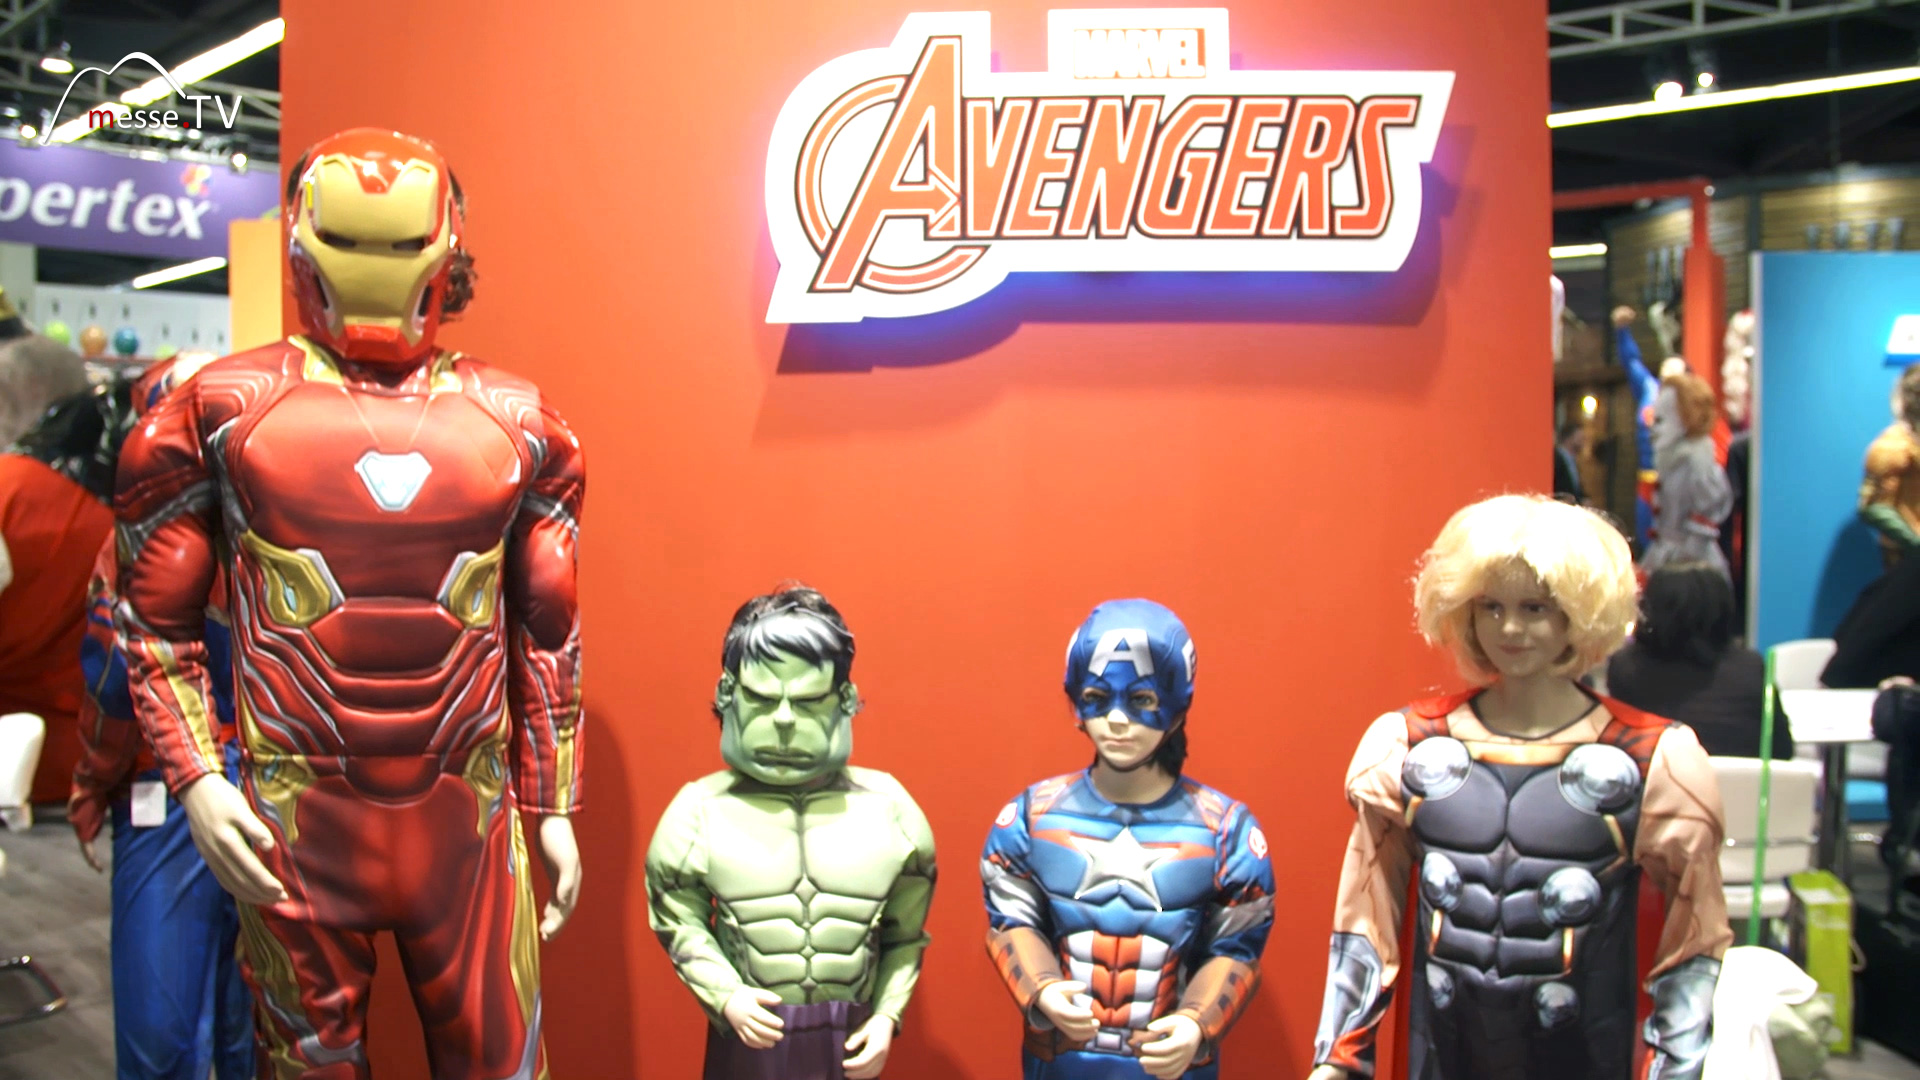 Rubies Avengers costumes Spielwarenmesse 2019 Nuremberg